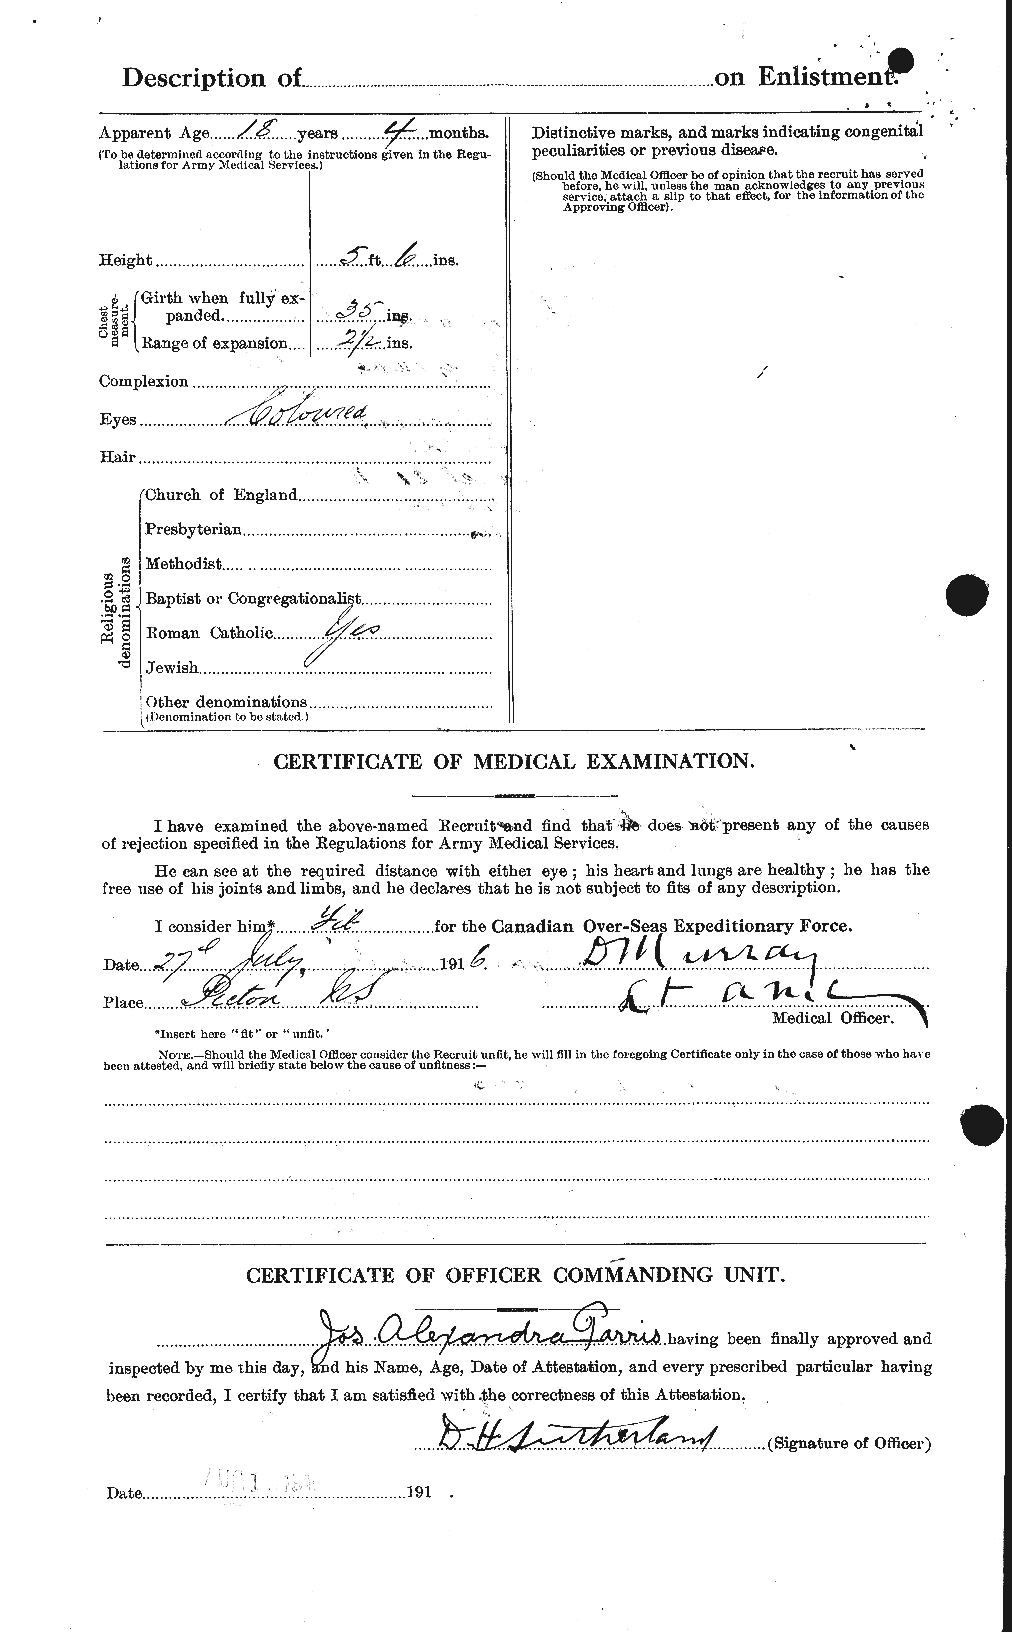 Dossiers du Personnel de la Première Guerre mondiale - CEC 566511b